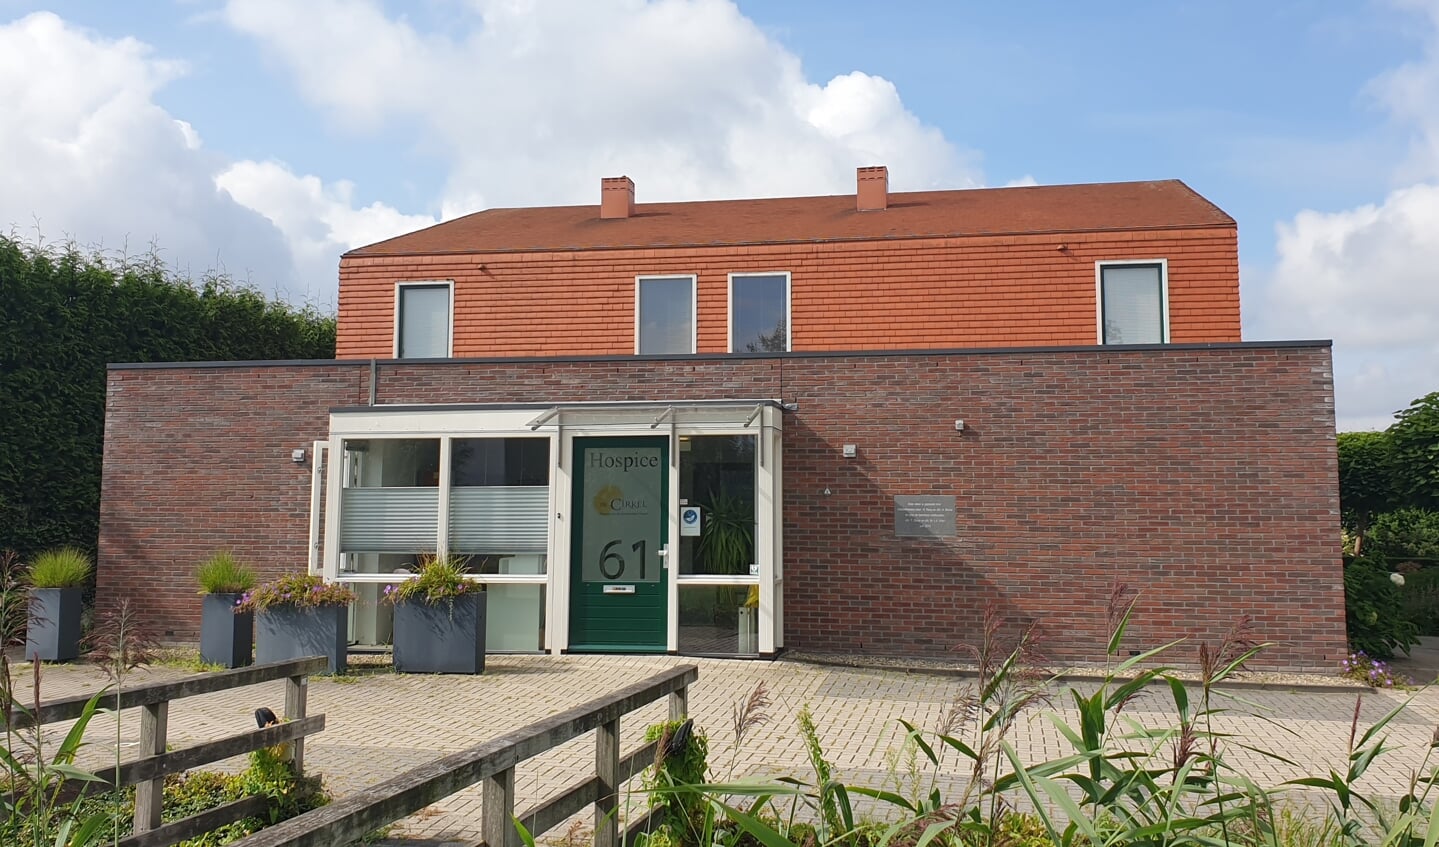 Hospice De Cirkel locatie Hendrik-Ido-Ambacht